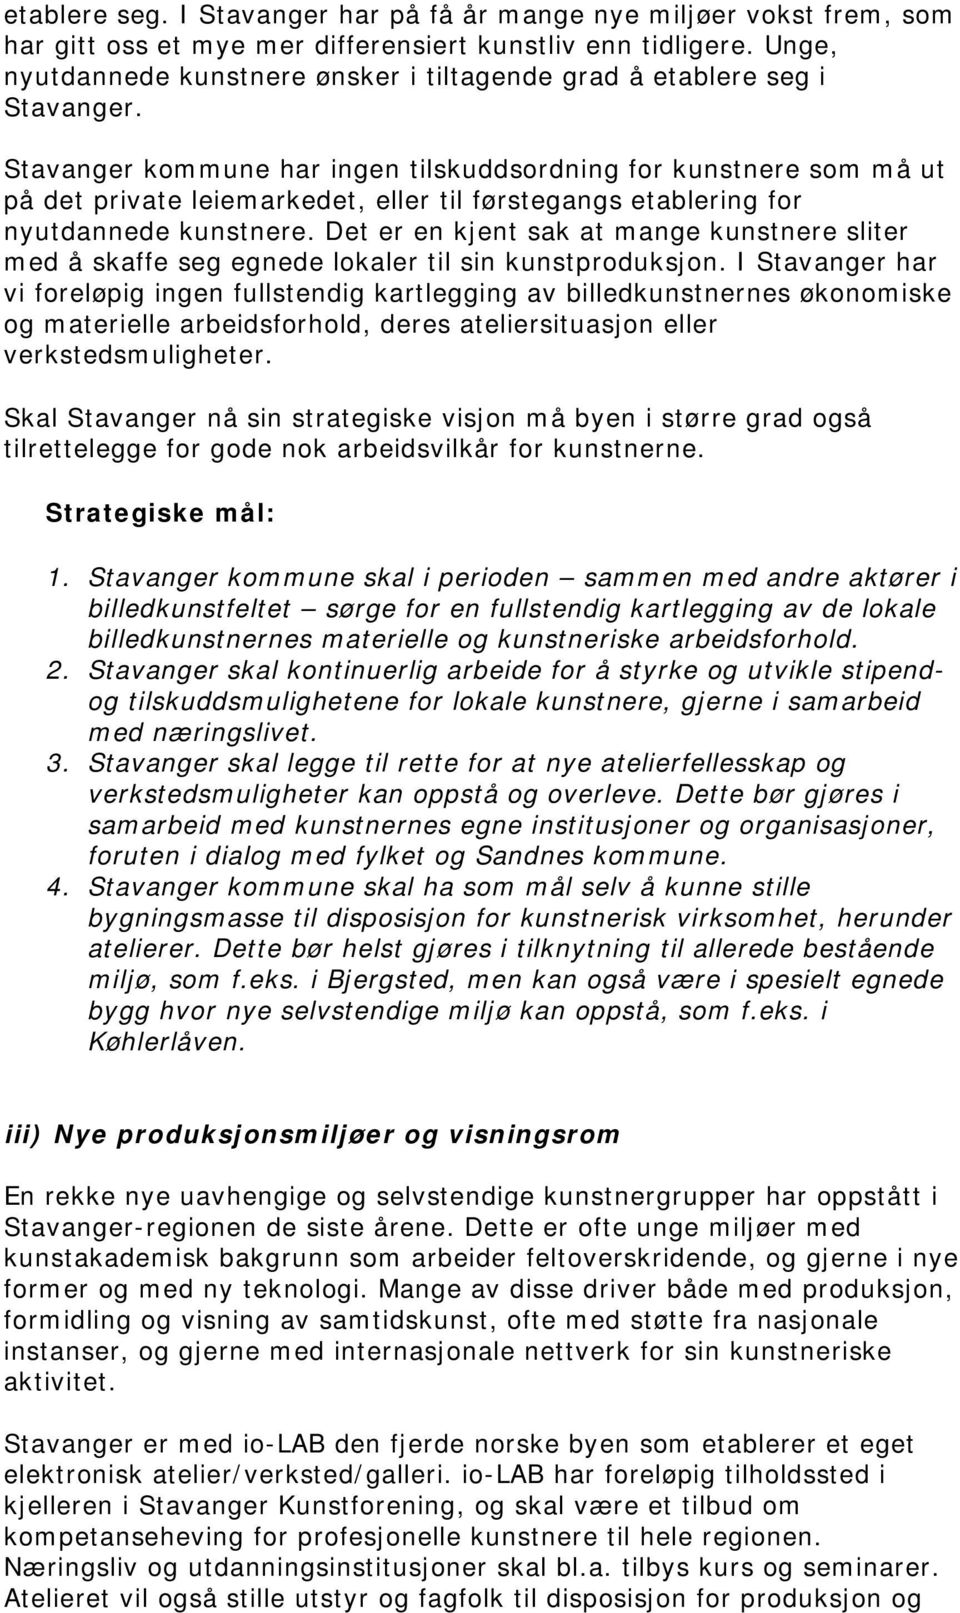 Stavanger kommune har ingen tilskuddsordning for kunstnere som må ut på det private leiemarkedet, eller til førstegangs etablering for nyutdannede kunstnere.